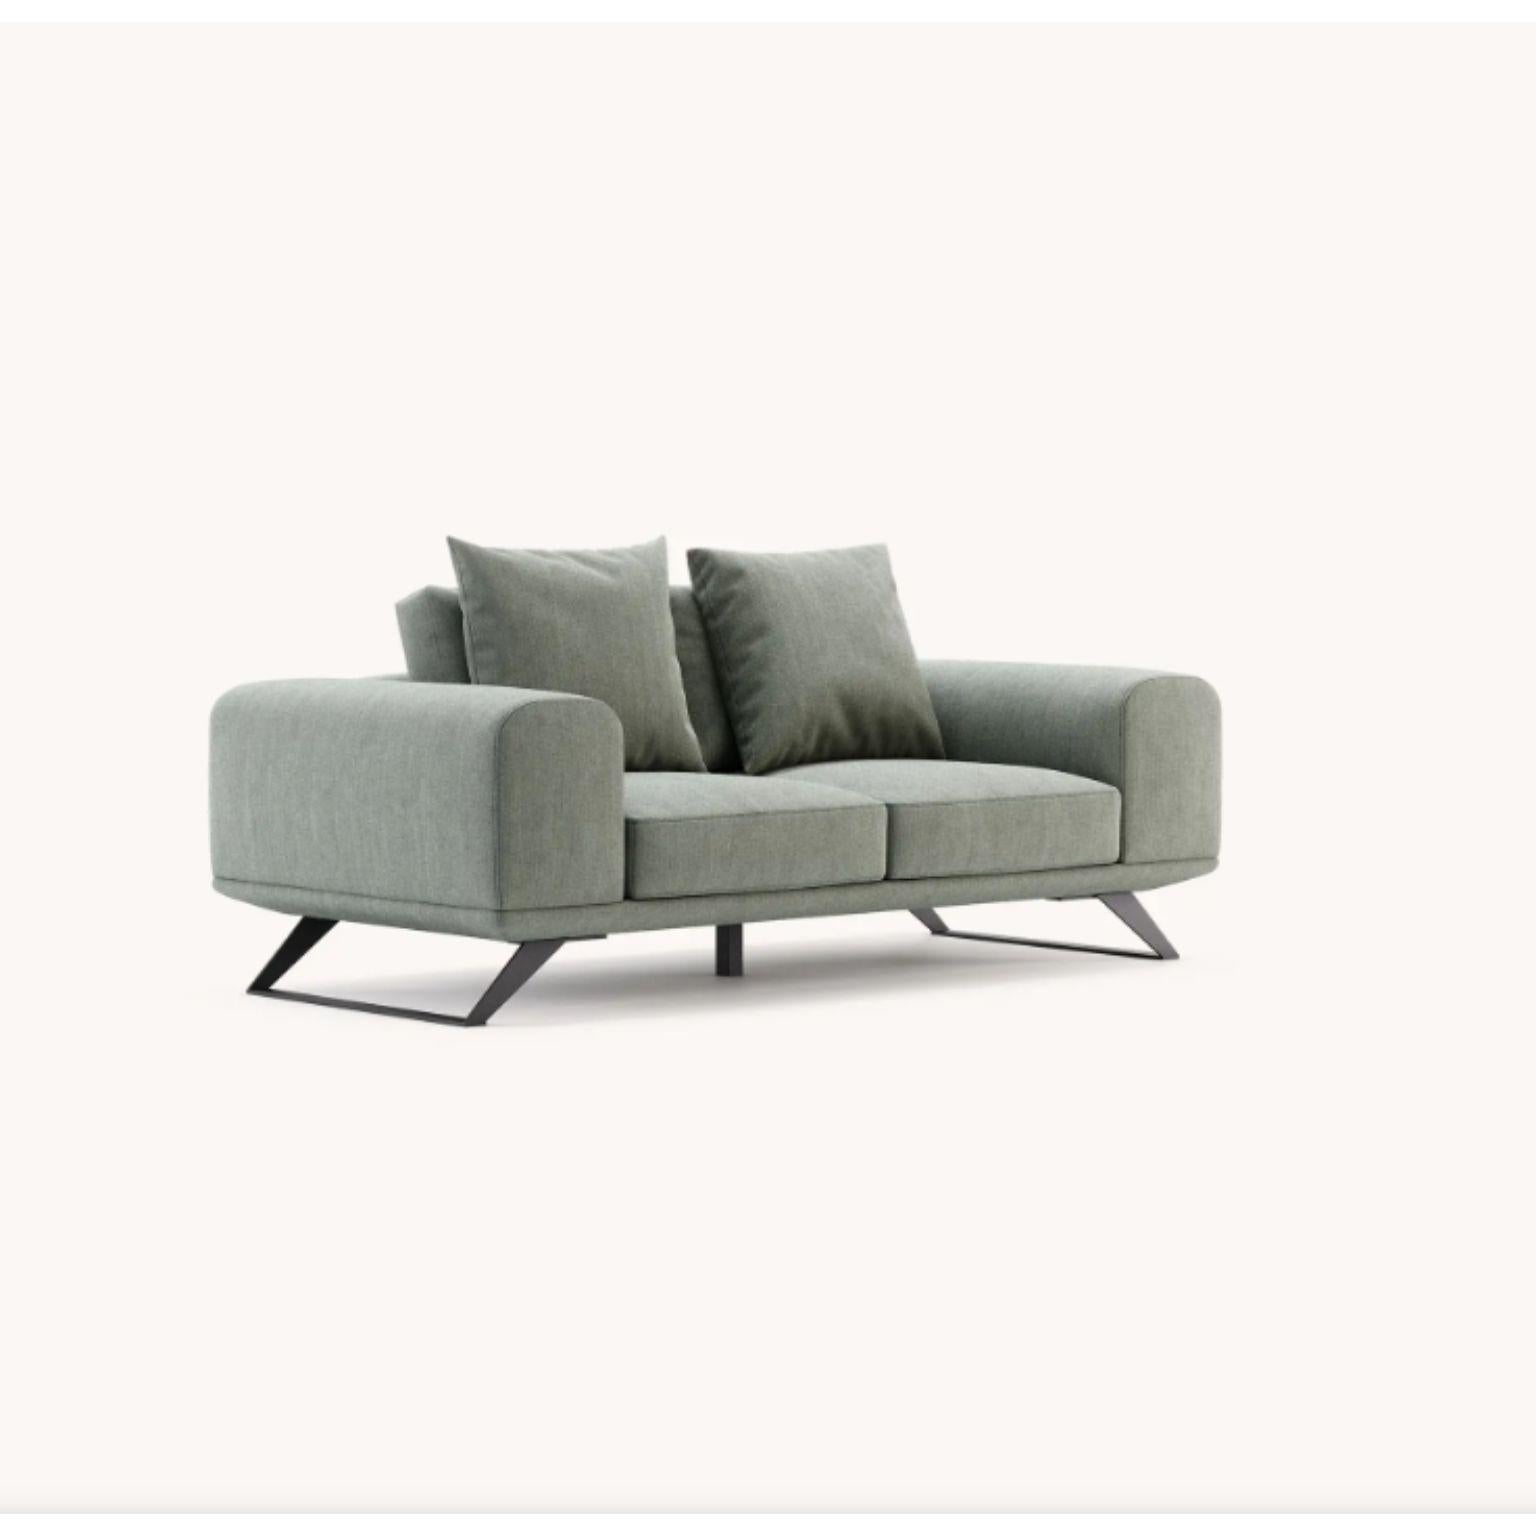 Aniston 2-sitziges sofa von Domkapa.
MATERIAL: Faser, schwarzer texturierter Stahl. 
Abmessungen: B 180 x T 97 x H 83 cm.
Auch in verschiedenen MATERIALEN erhältlich. 

Das Sofa Aniston ist ein modernes Designerstück, bei dem rechteckige Linien